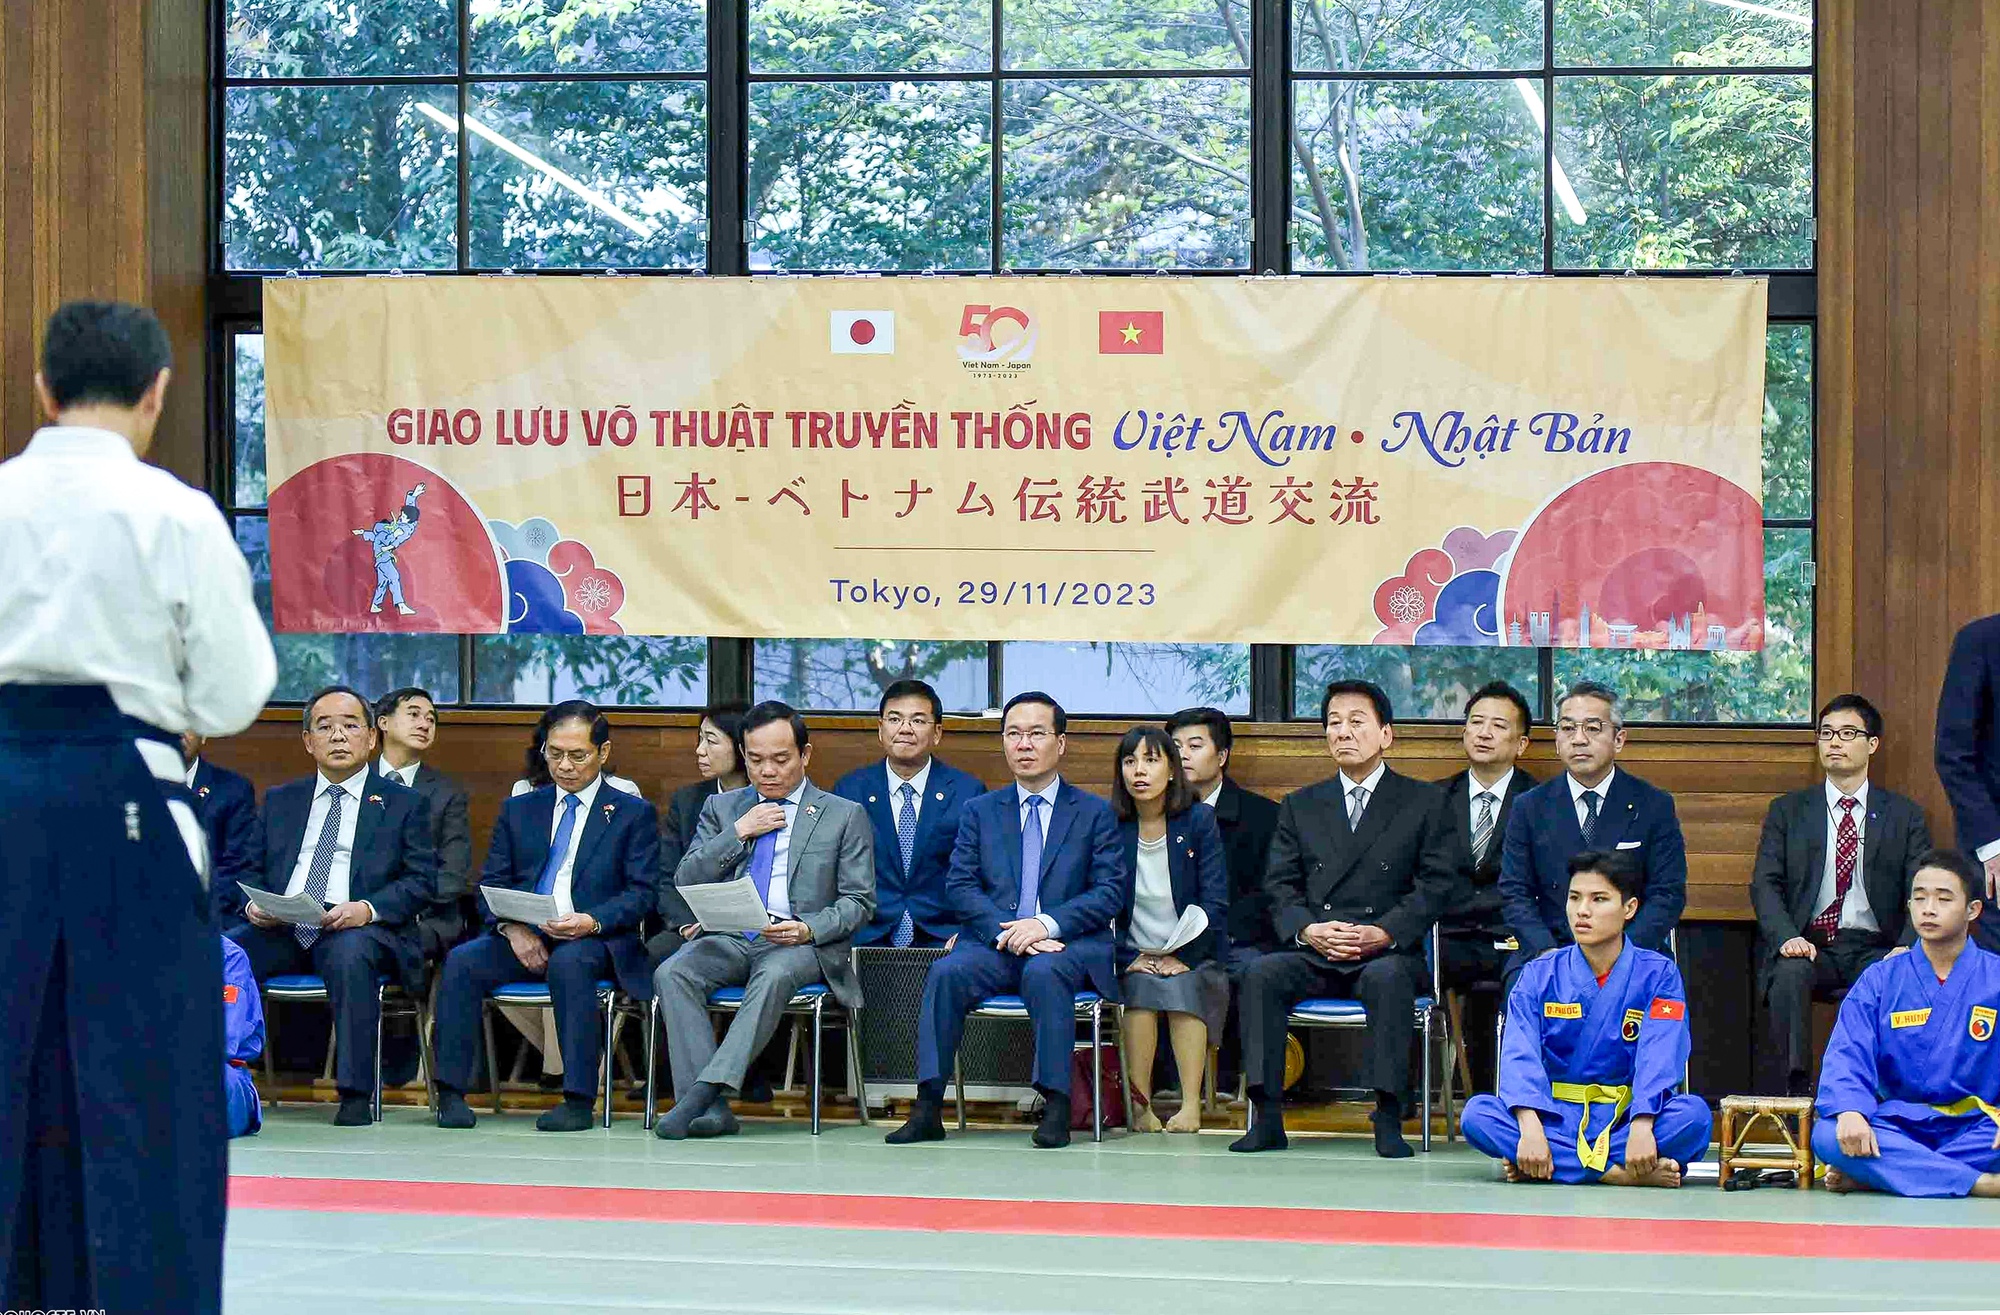 Chủ tịch nước Võ Văn Thưởng dự chương trình giao lưu và trình diễn võ thuật Vovinam và Võ đạo Nhật Bản - Ảnh 1.